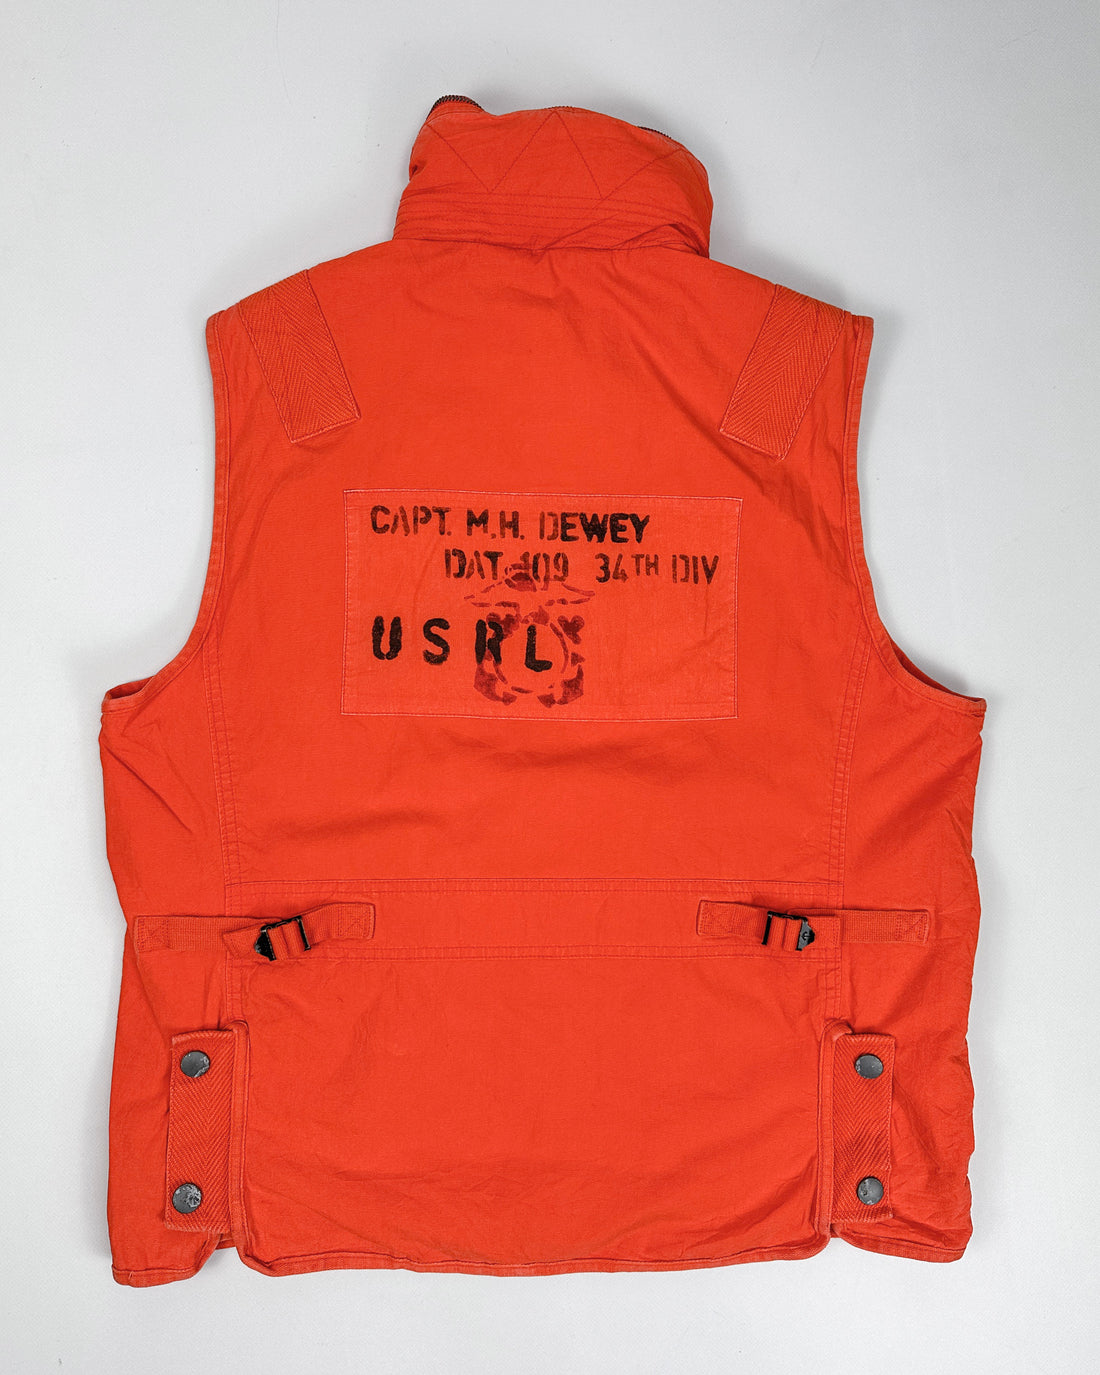 Ralph Lauren Experimental Garment Vest 2000's